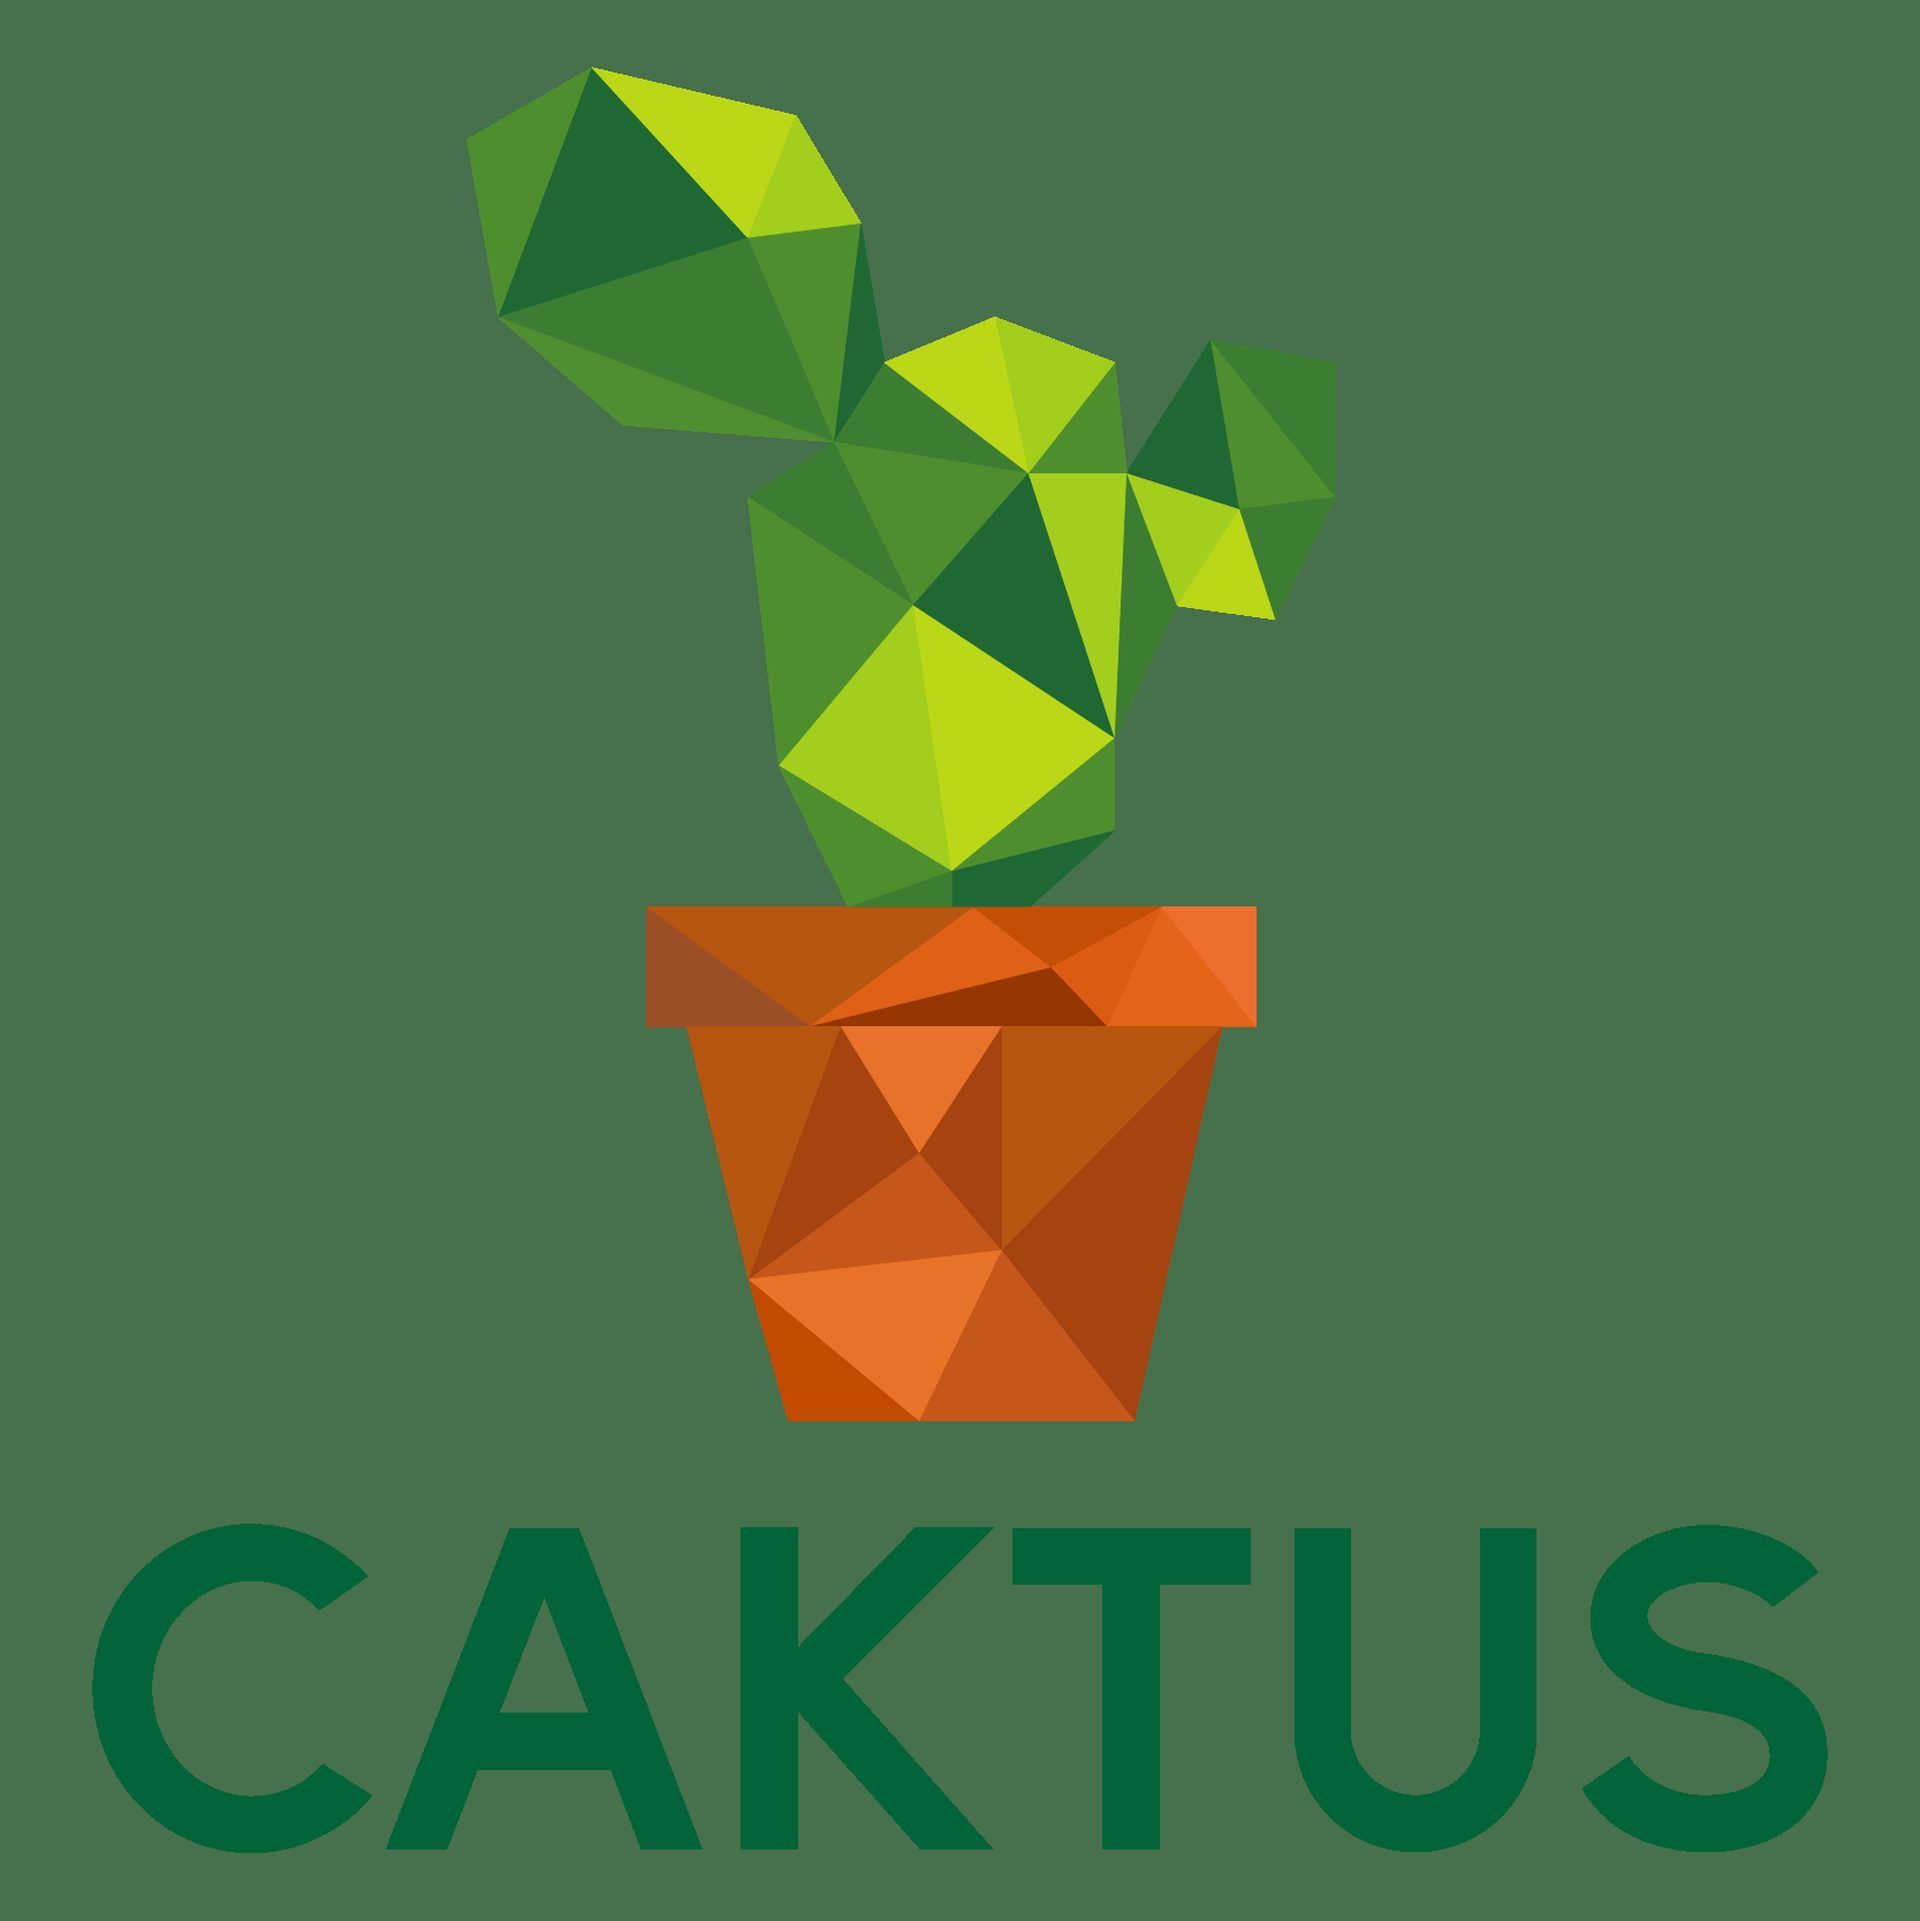 cactus essay bot